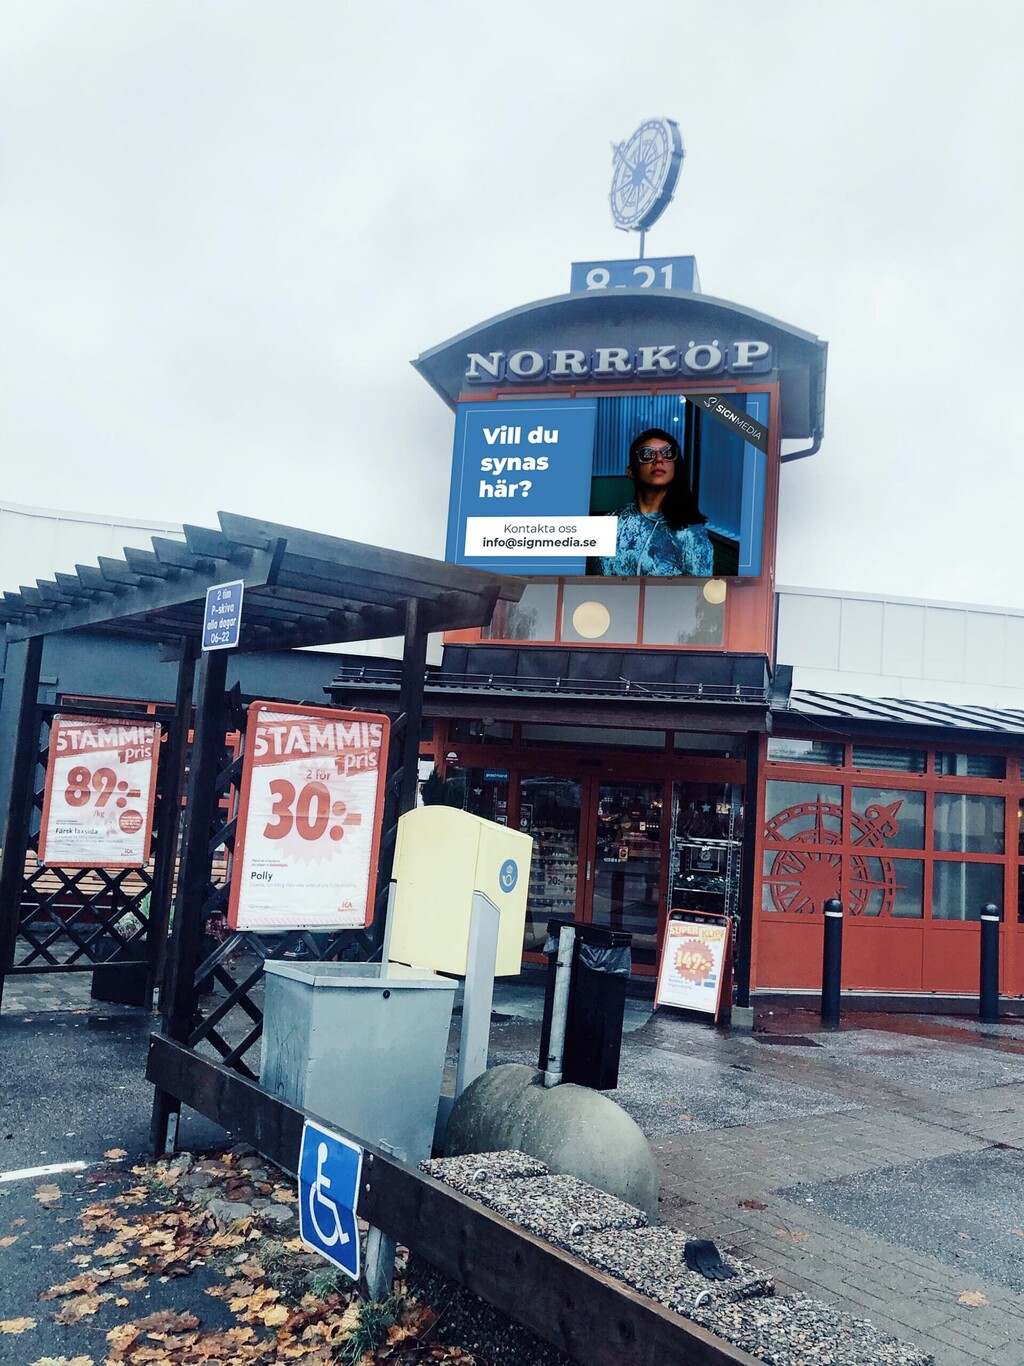 ICA Supermarket Norrtalje Norrkop Utomhus storskarm